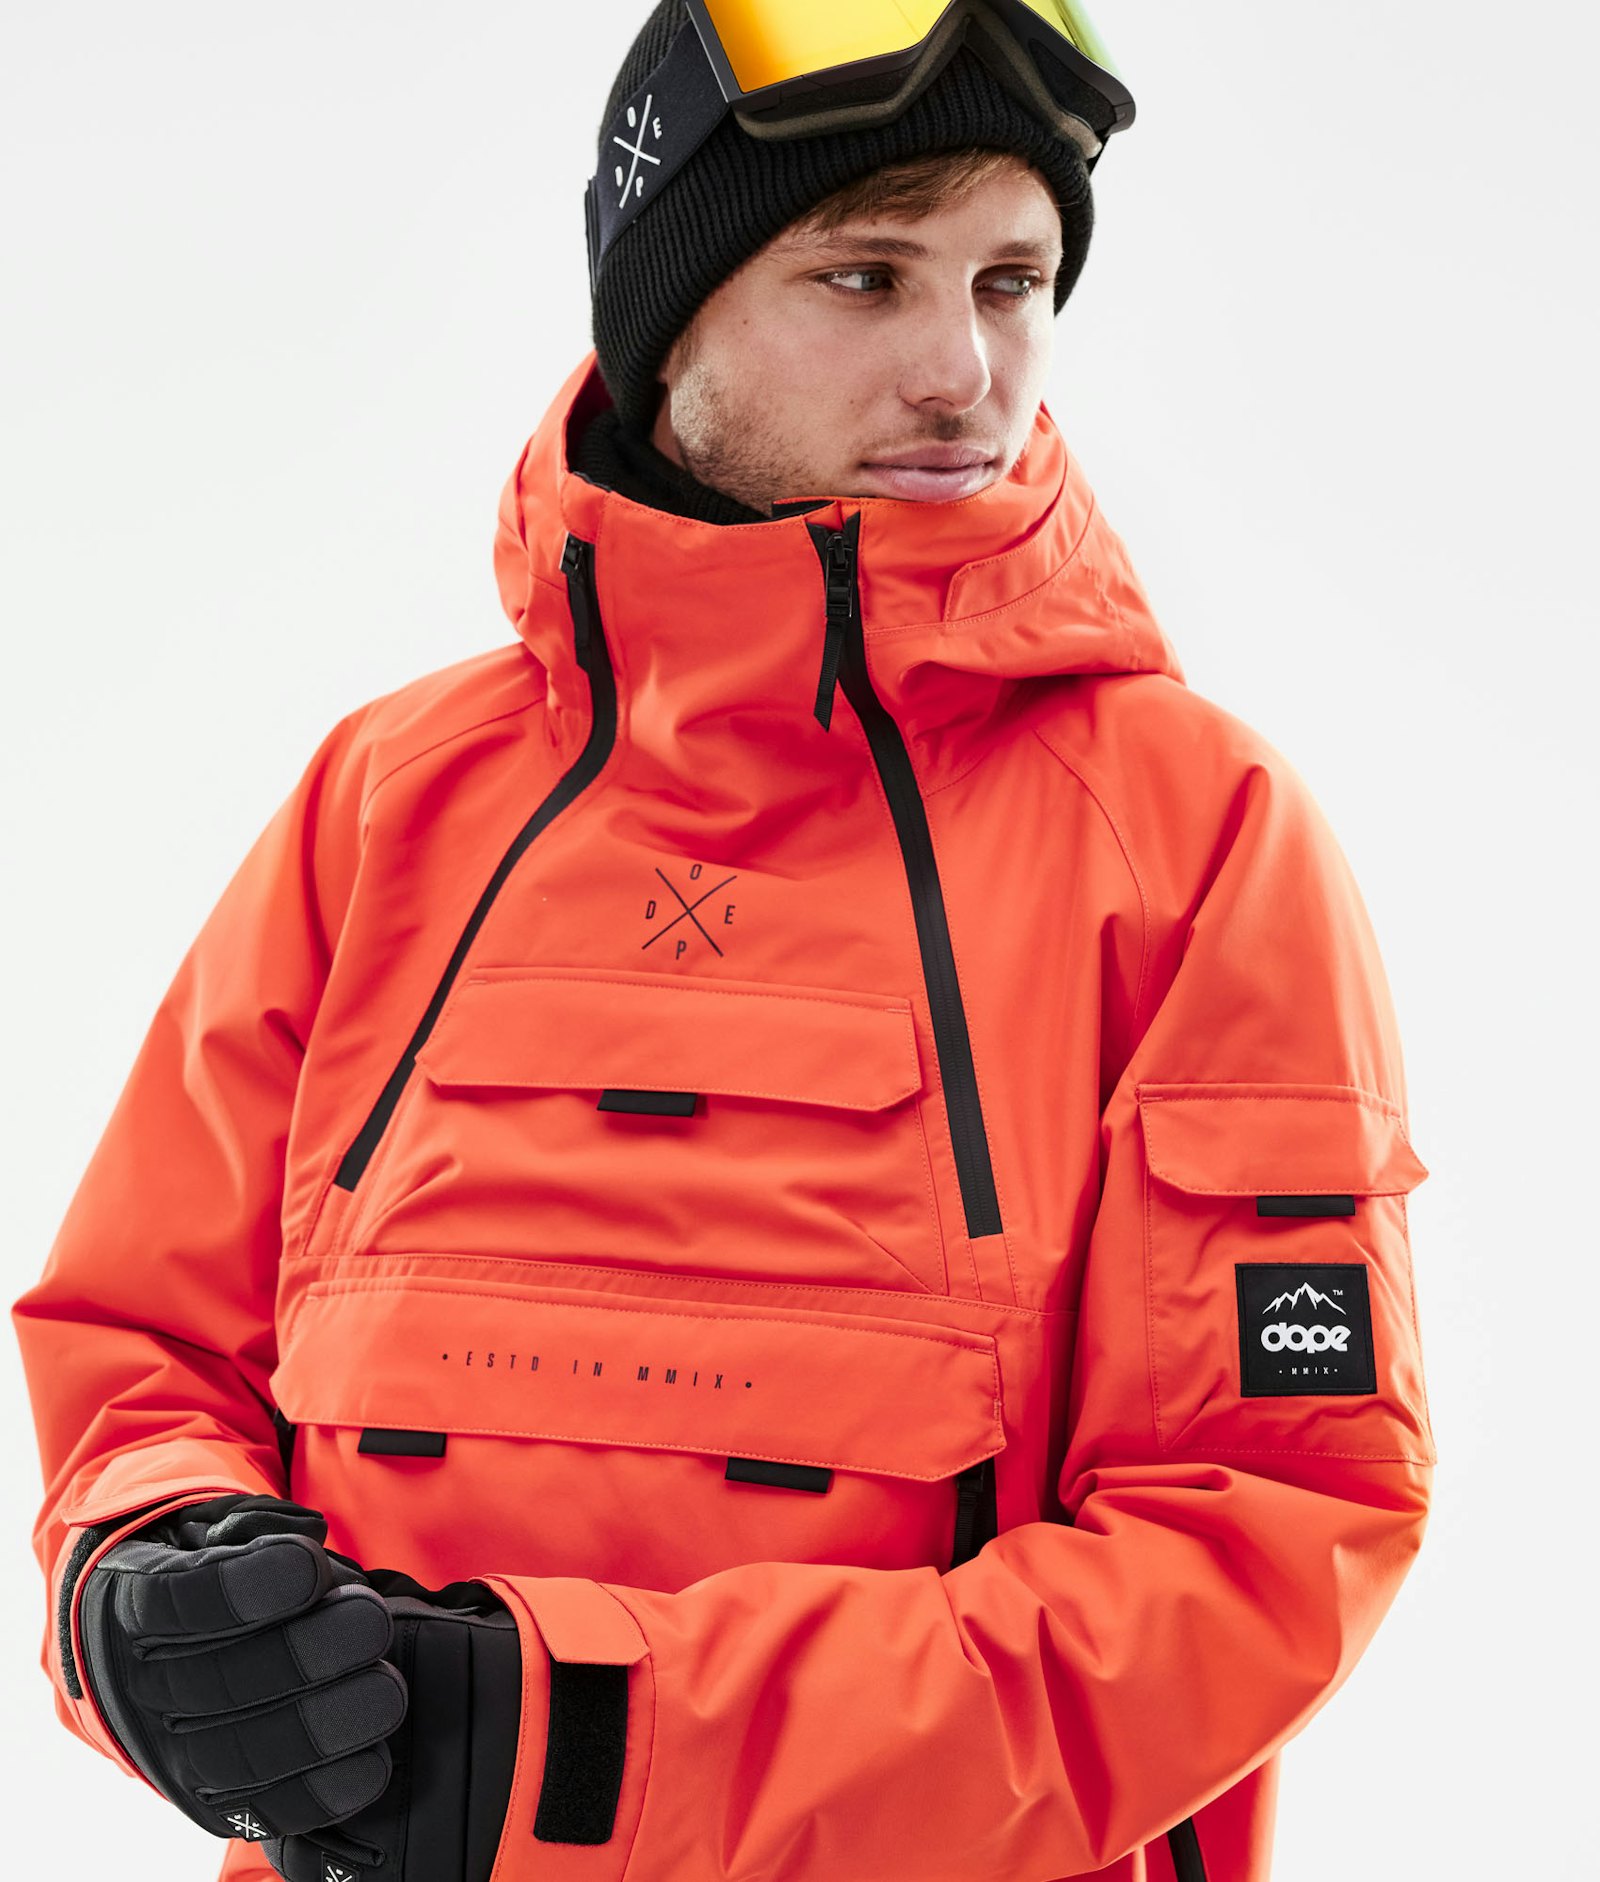 Akin 2021 Snowboardjacke Herren Orange